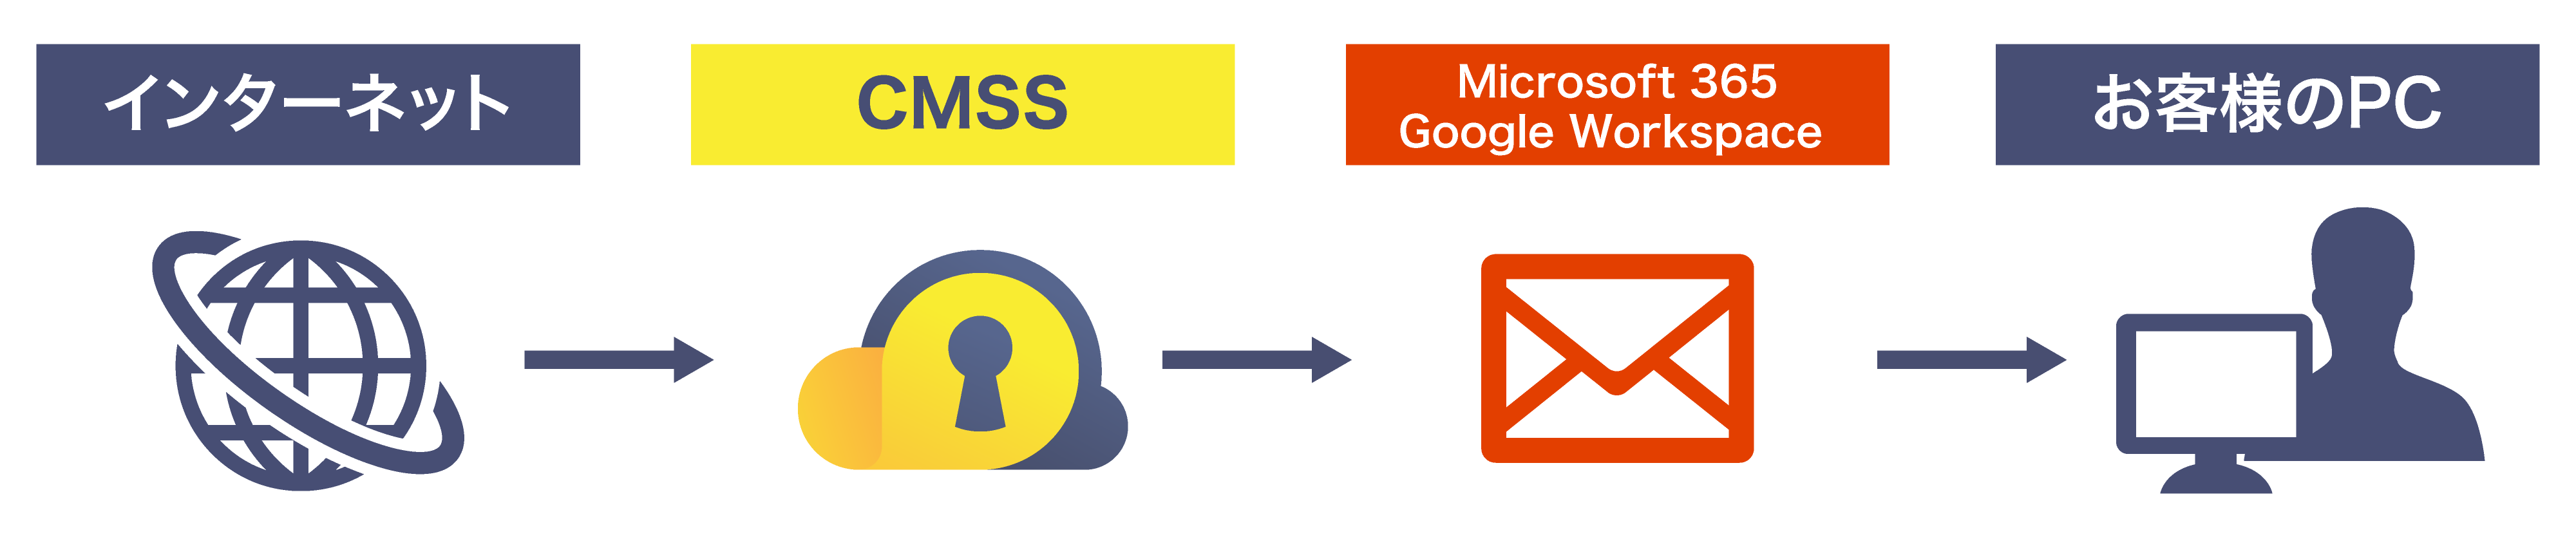 CMSSは、Microsoft 365、Google Workspace のメールセキュリティを強化します